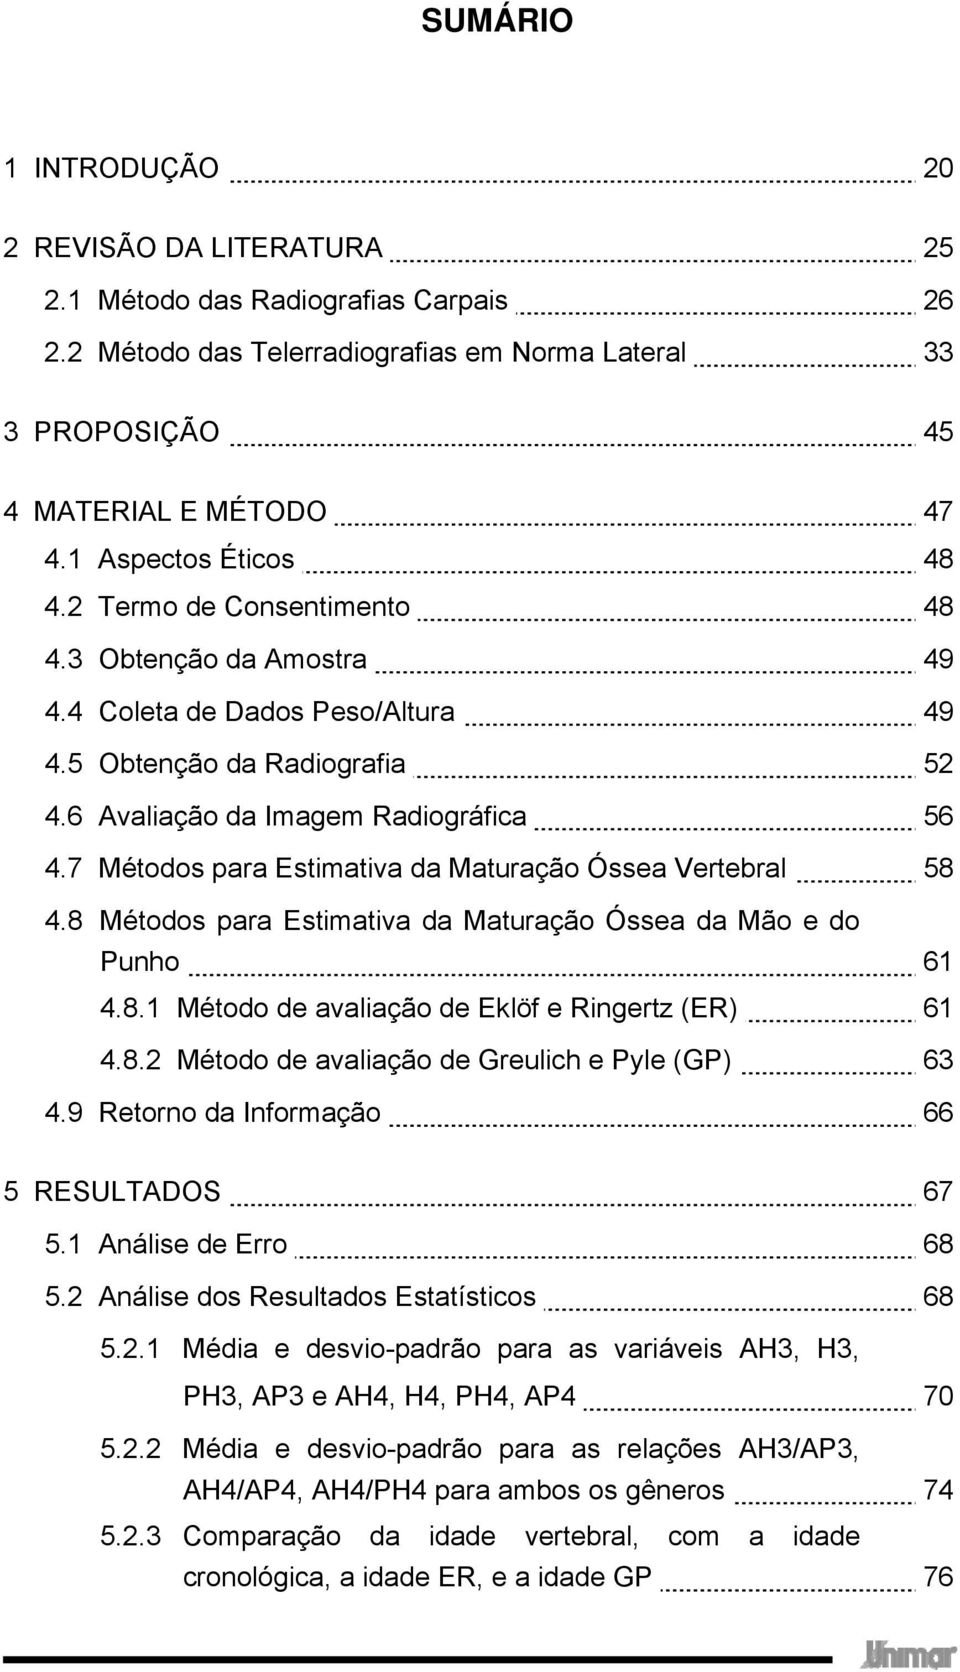 7 Métodos para Estimativa da Maturação Óssea Vertebral 58 4.8 Métodos para Estimativa da Maturação Óssea da Mão e do Punho 61 4.8.1 Método de avaliação de Eklöf e Ringertz (ER) 61 4.8.2 Método de avaliação de Greulich e Pyle (GP) 63 4.